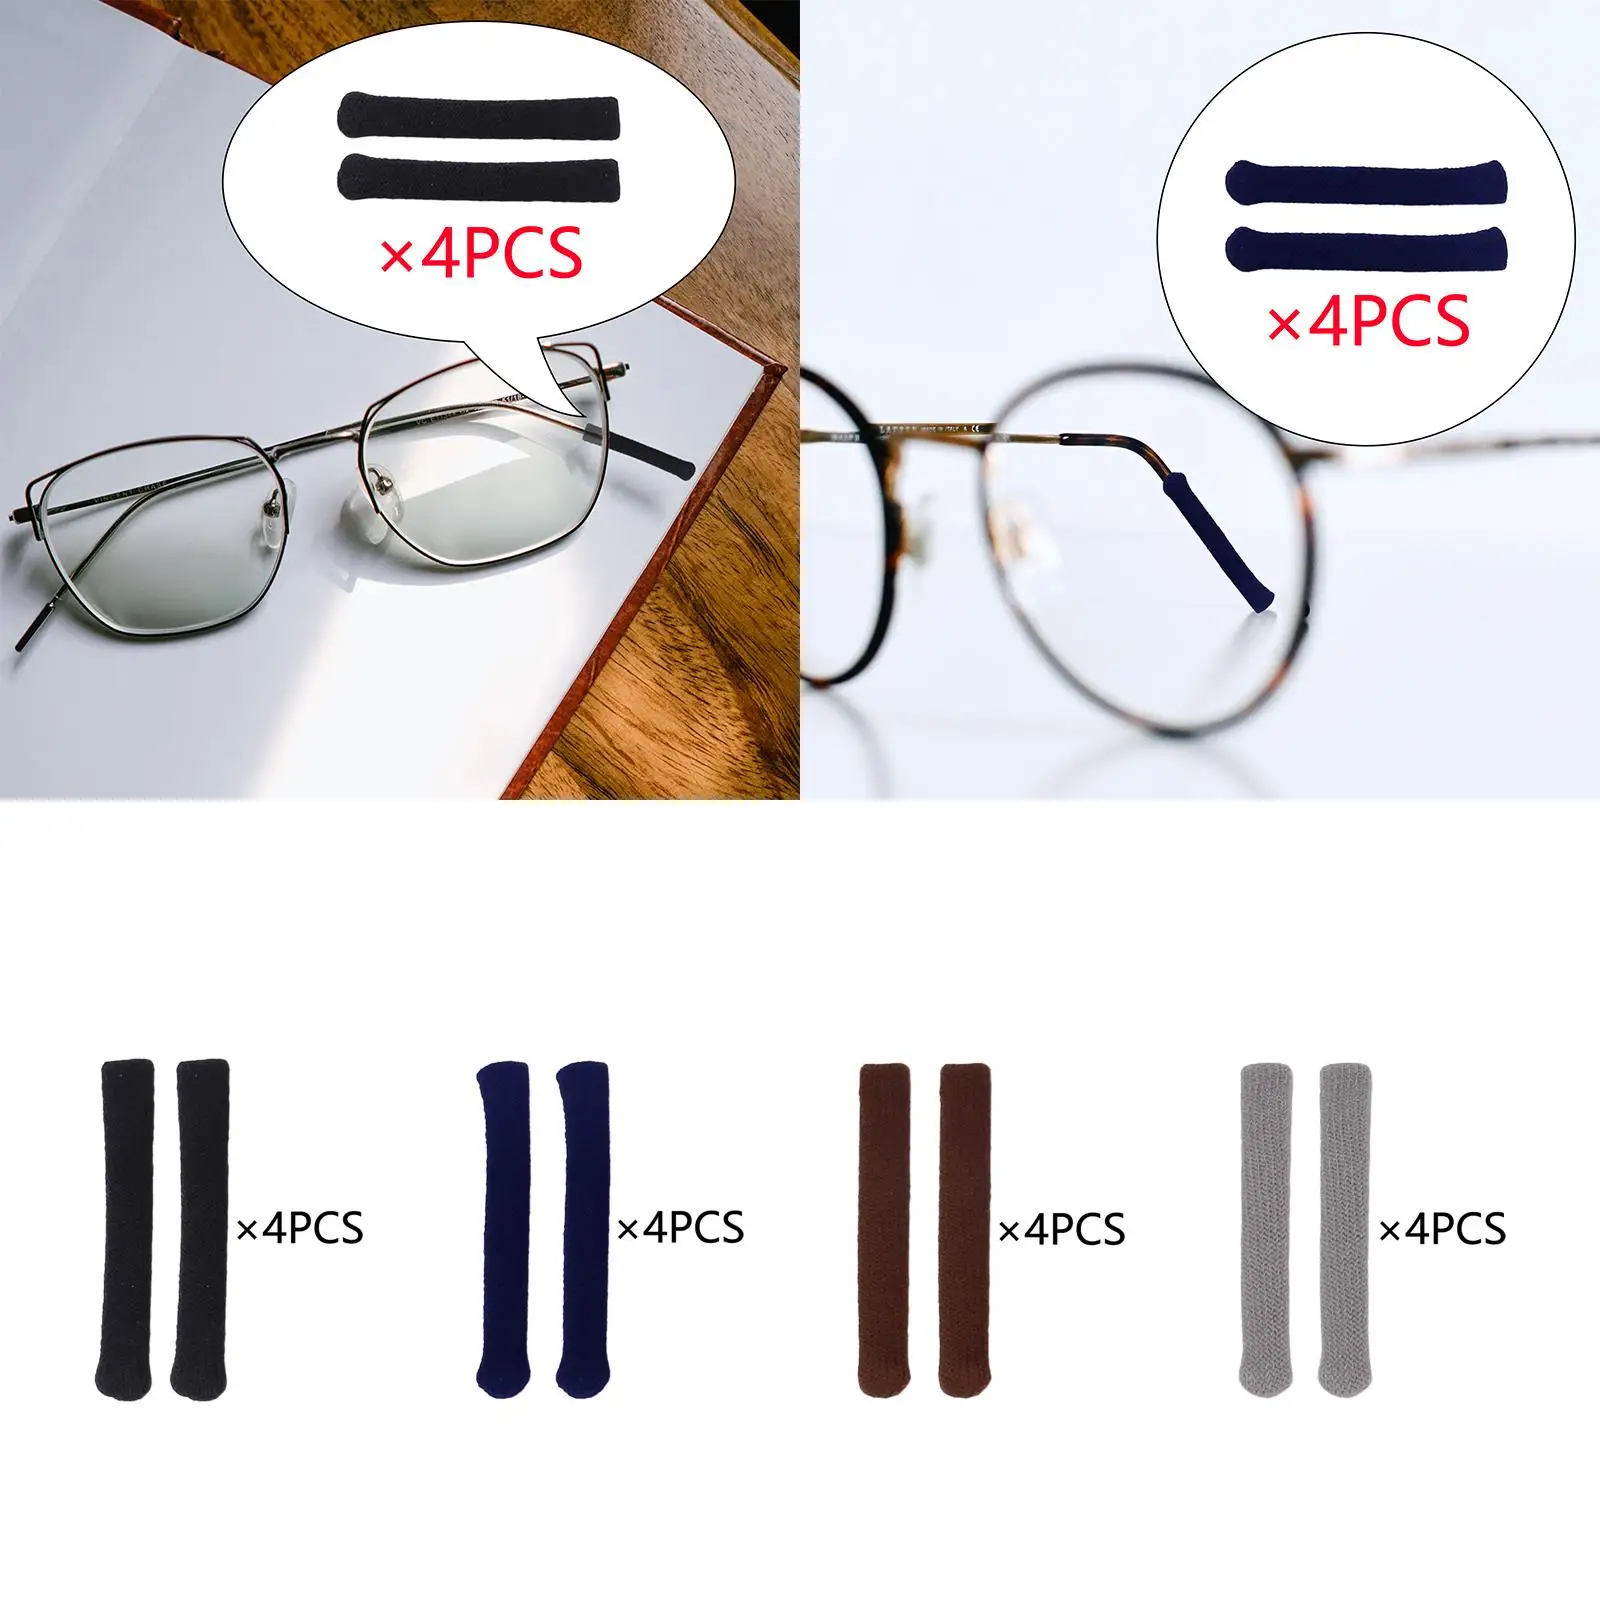 4 Pairs Eyeglasses Temple Tip Sleeve Retainer Comfortable Eyeglasses Ear Grips Cushions for Eyewear Sunglasses Eyeglasses